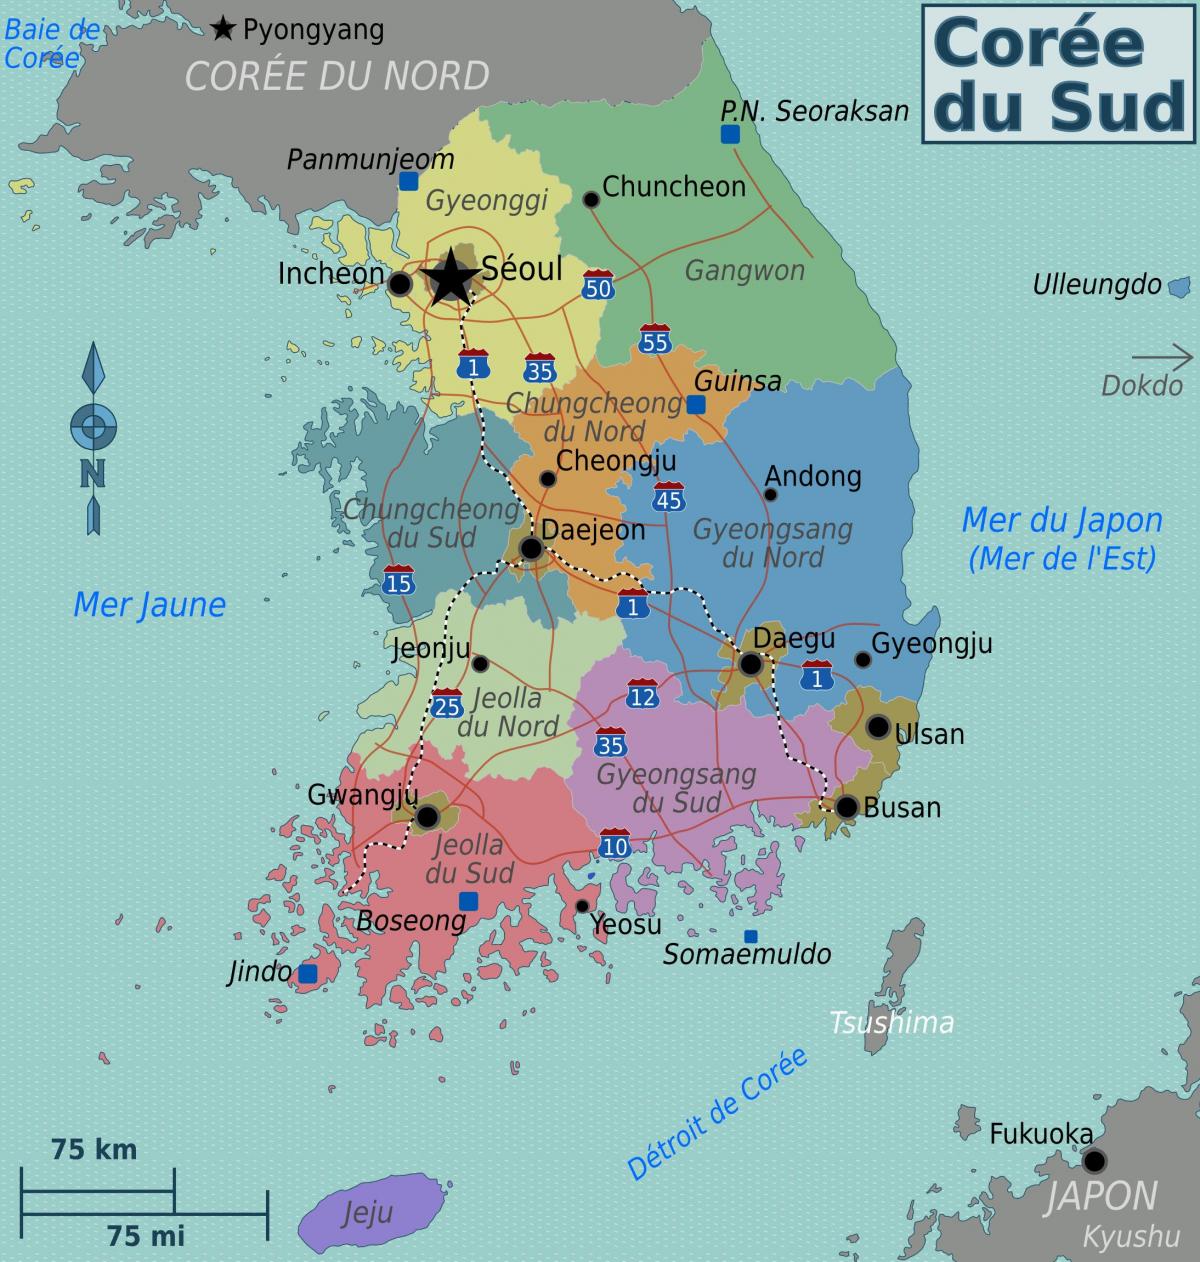 Mappa delle zone della Corea del Sud (ROK)